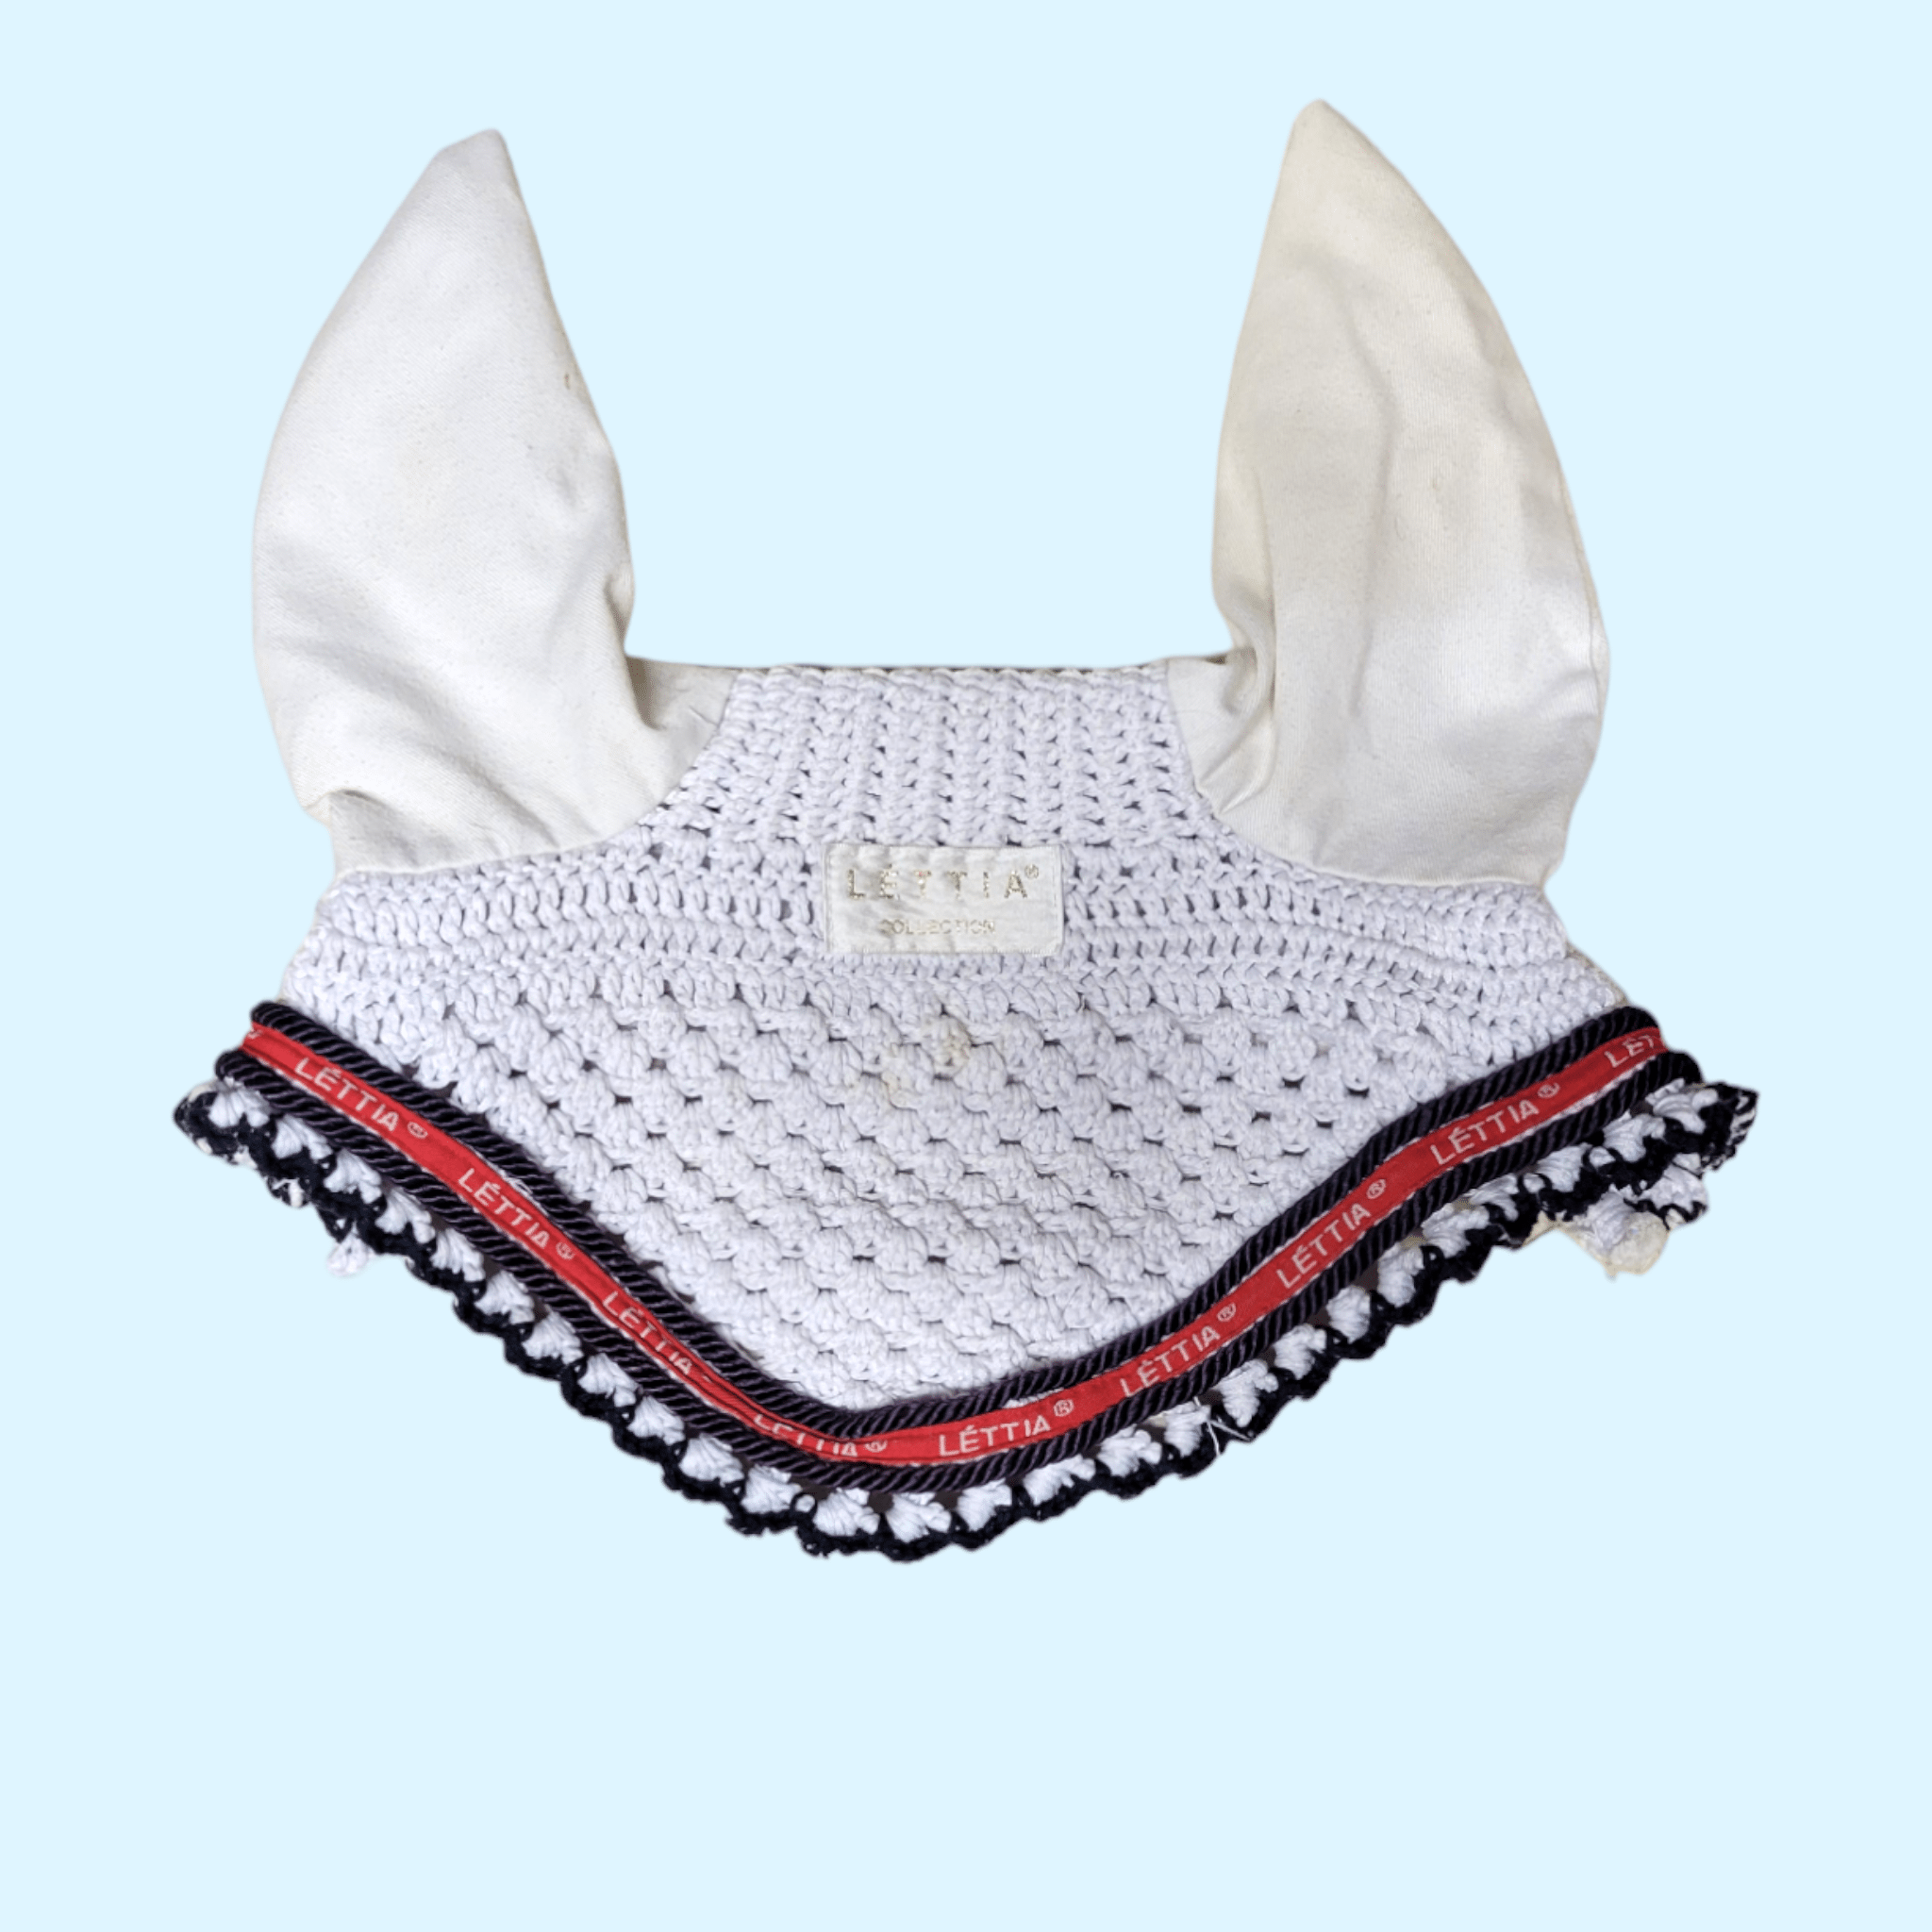 Lettia Fly Bonnet - Full Size - White/Navy/Red